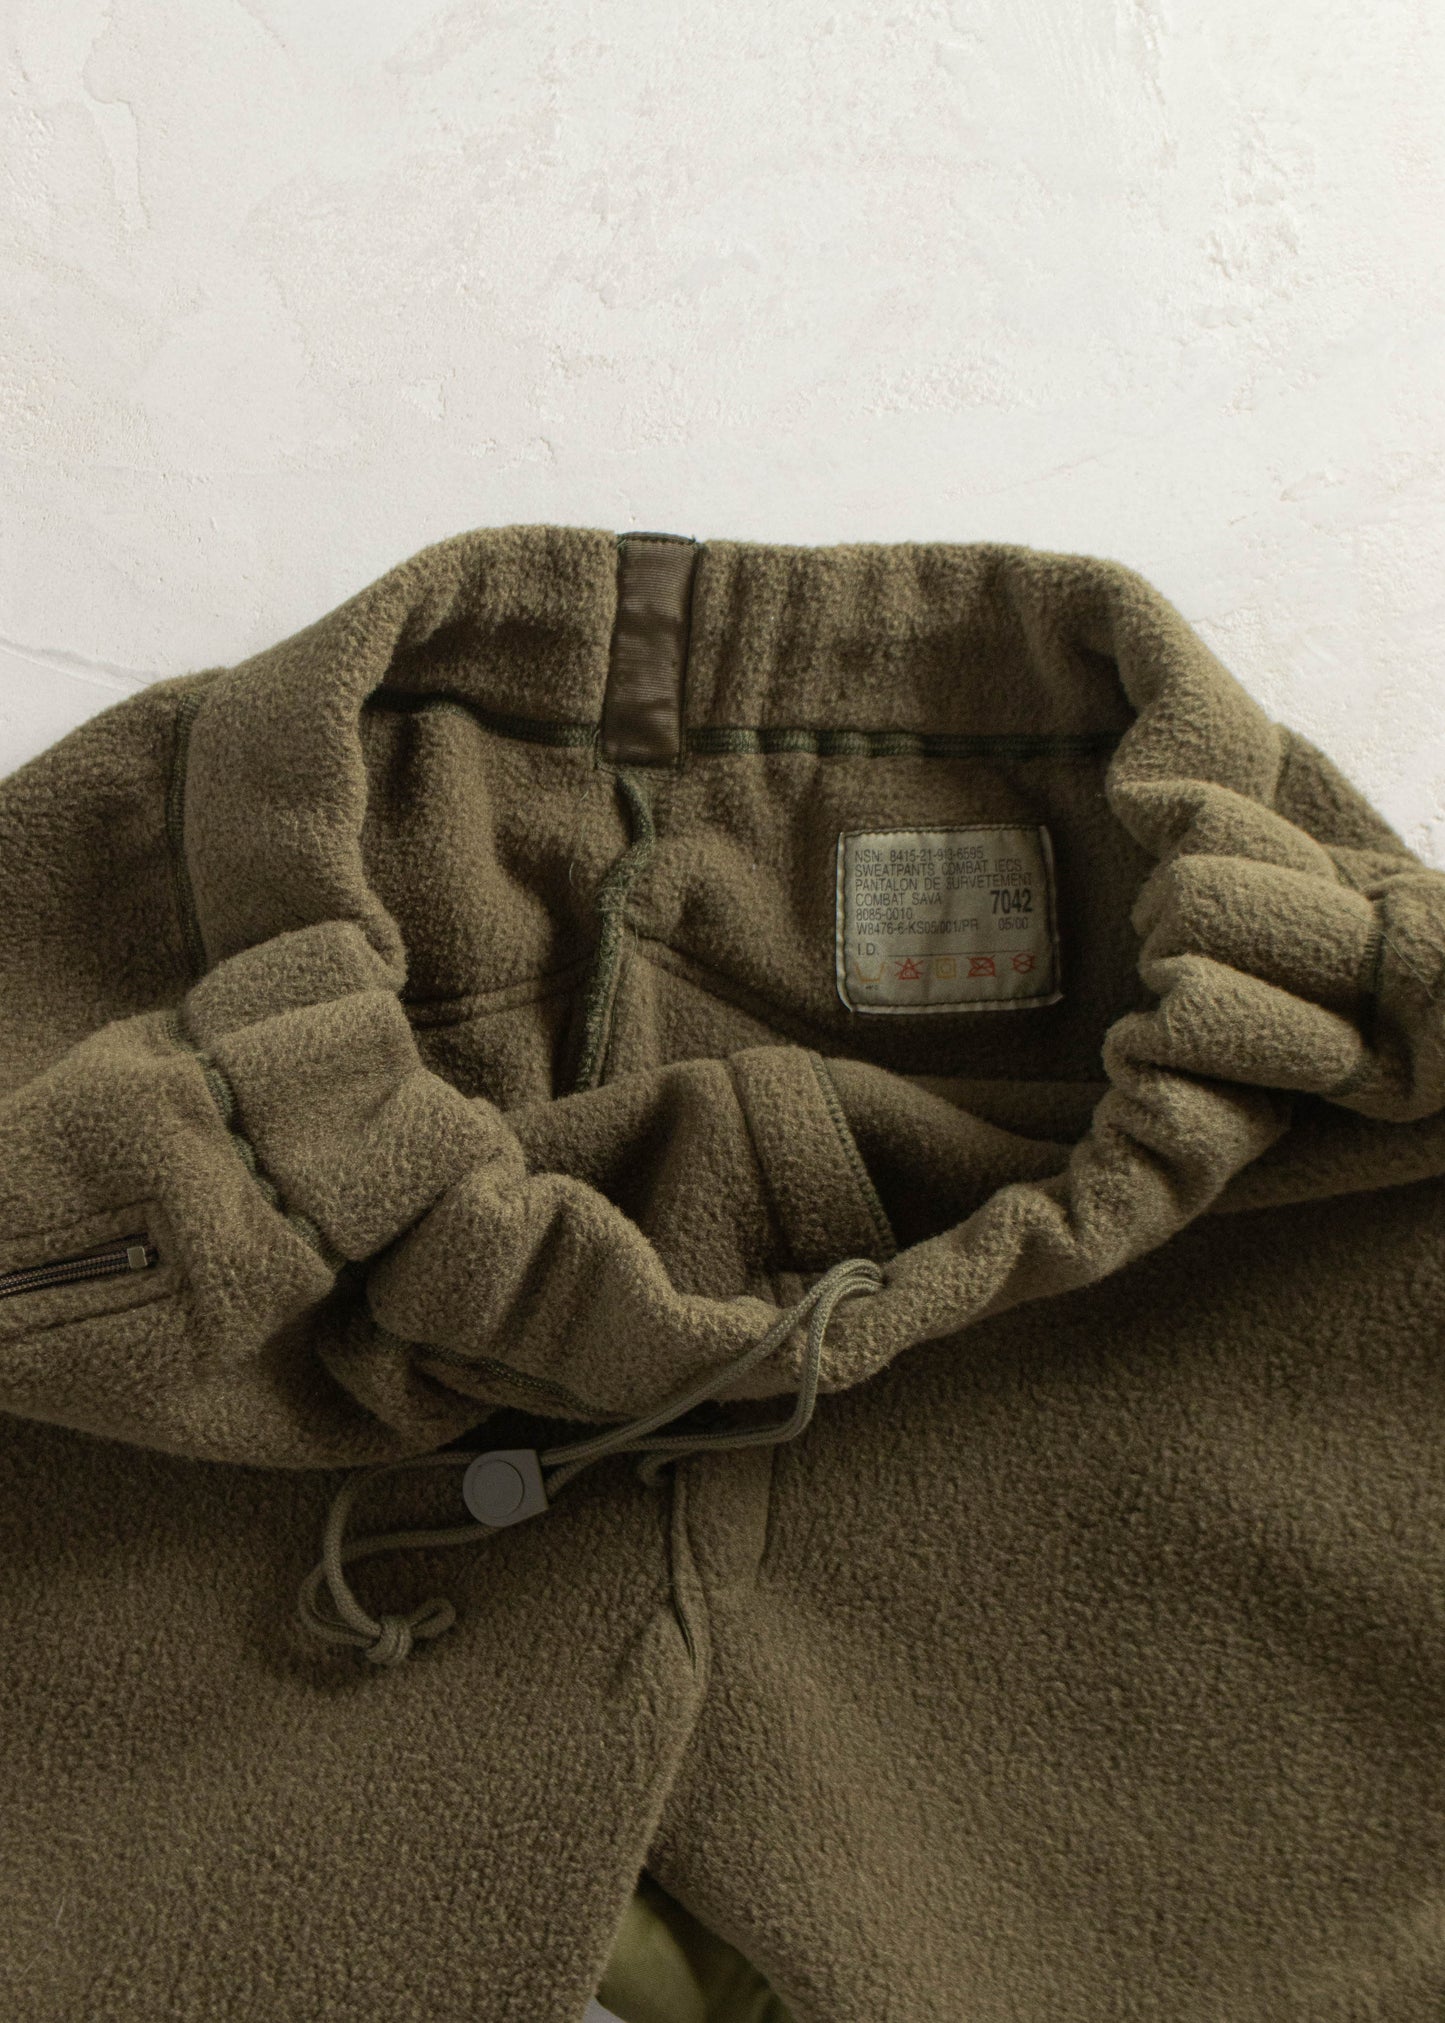 1990s Military Combat Polar Fleece Sweatpants Size XL/2XL